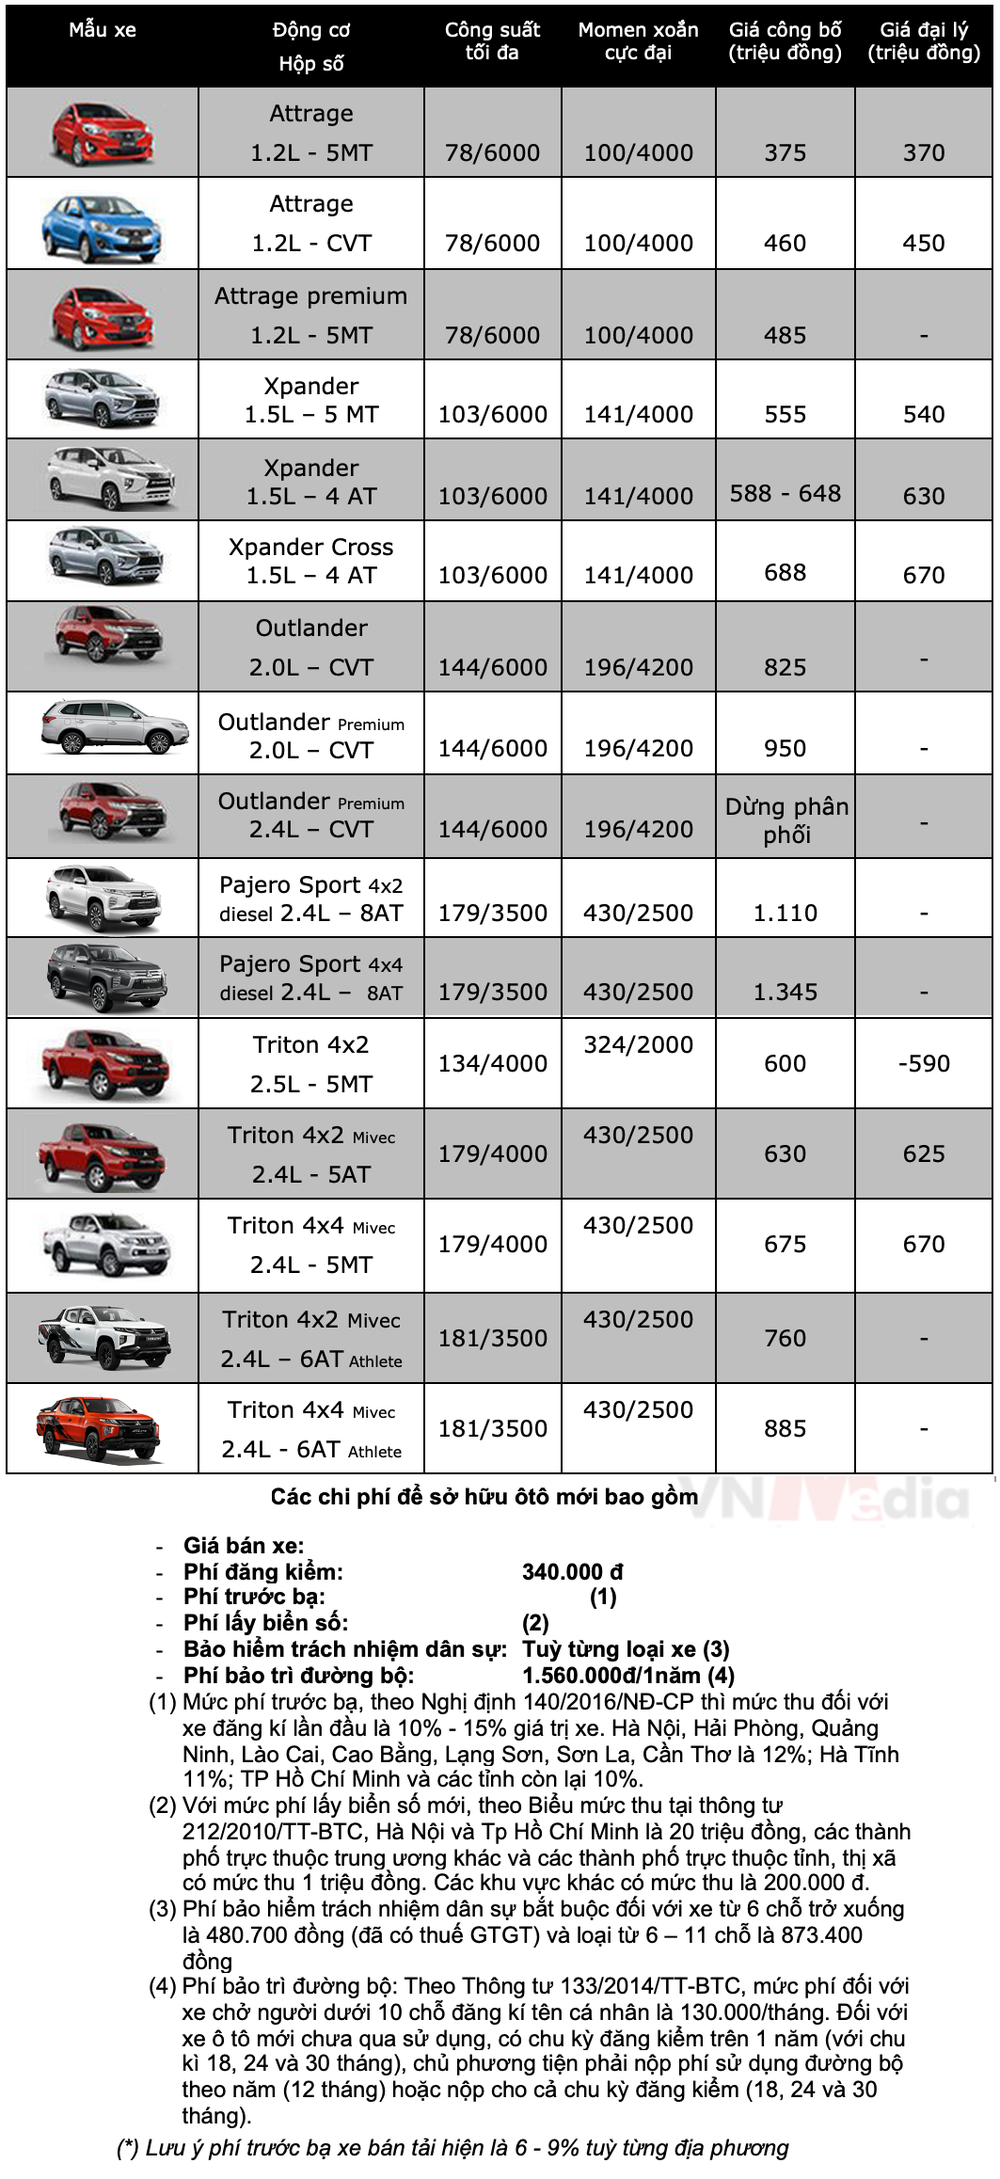 Bảng giá xe Mitsubishi tháng 5: Mitsubishi Pajero Sport được giảm gần 70 triệu đồng - Ảnh 2.